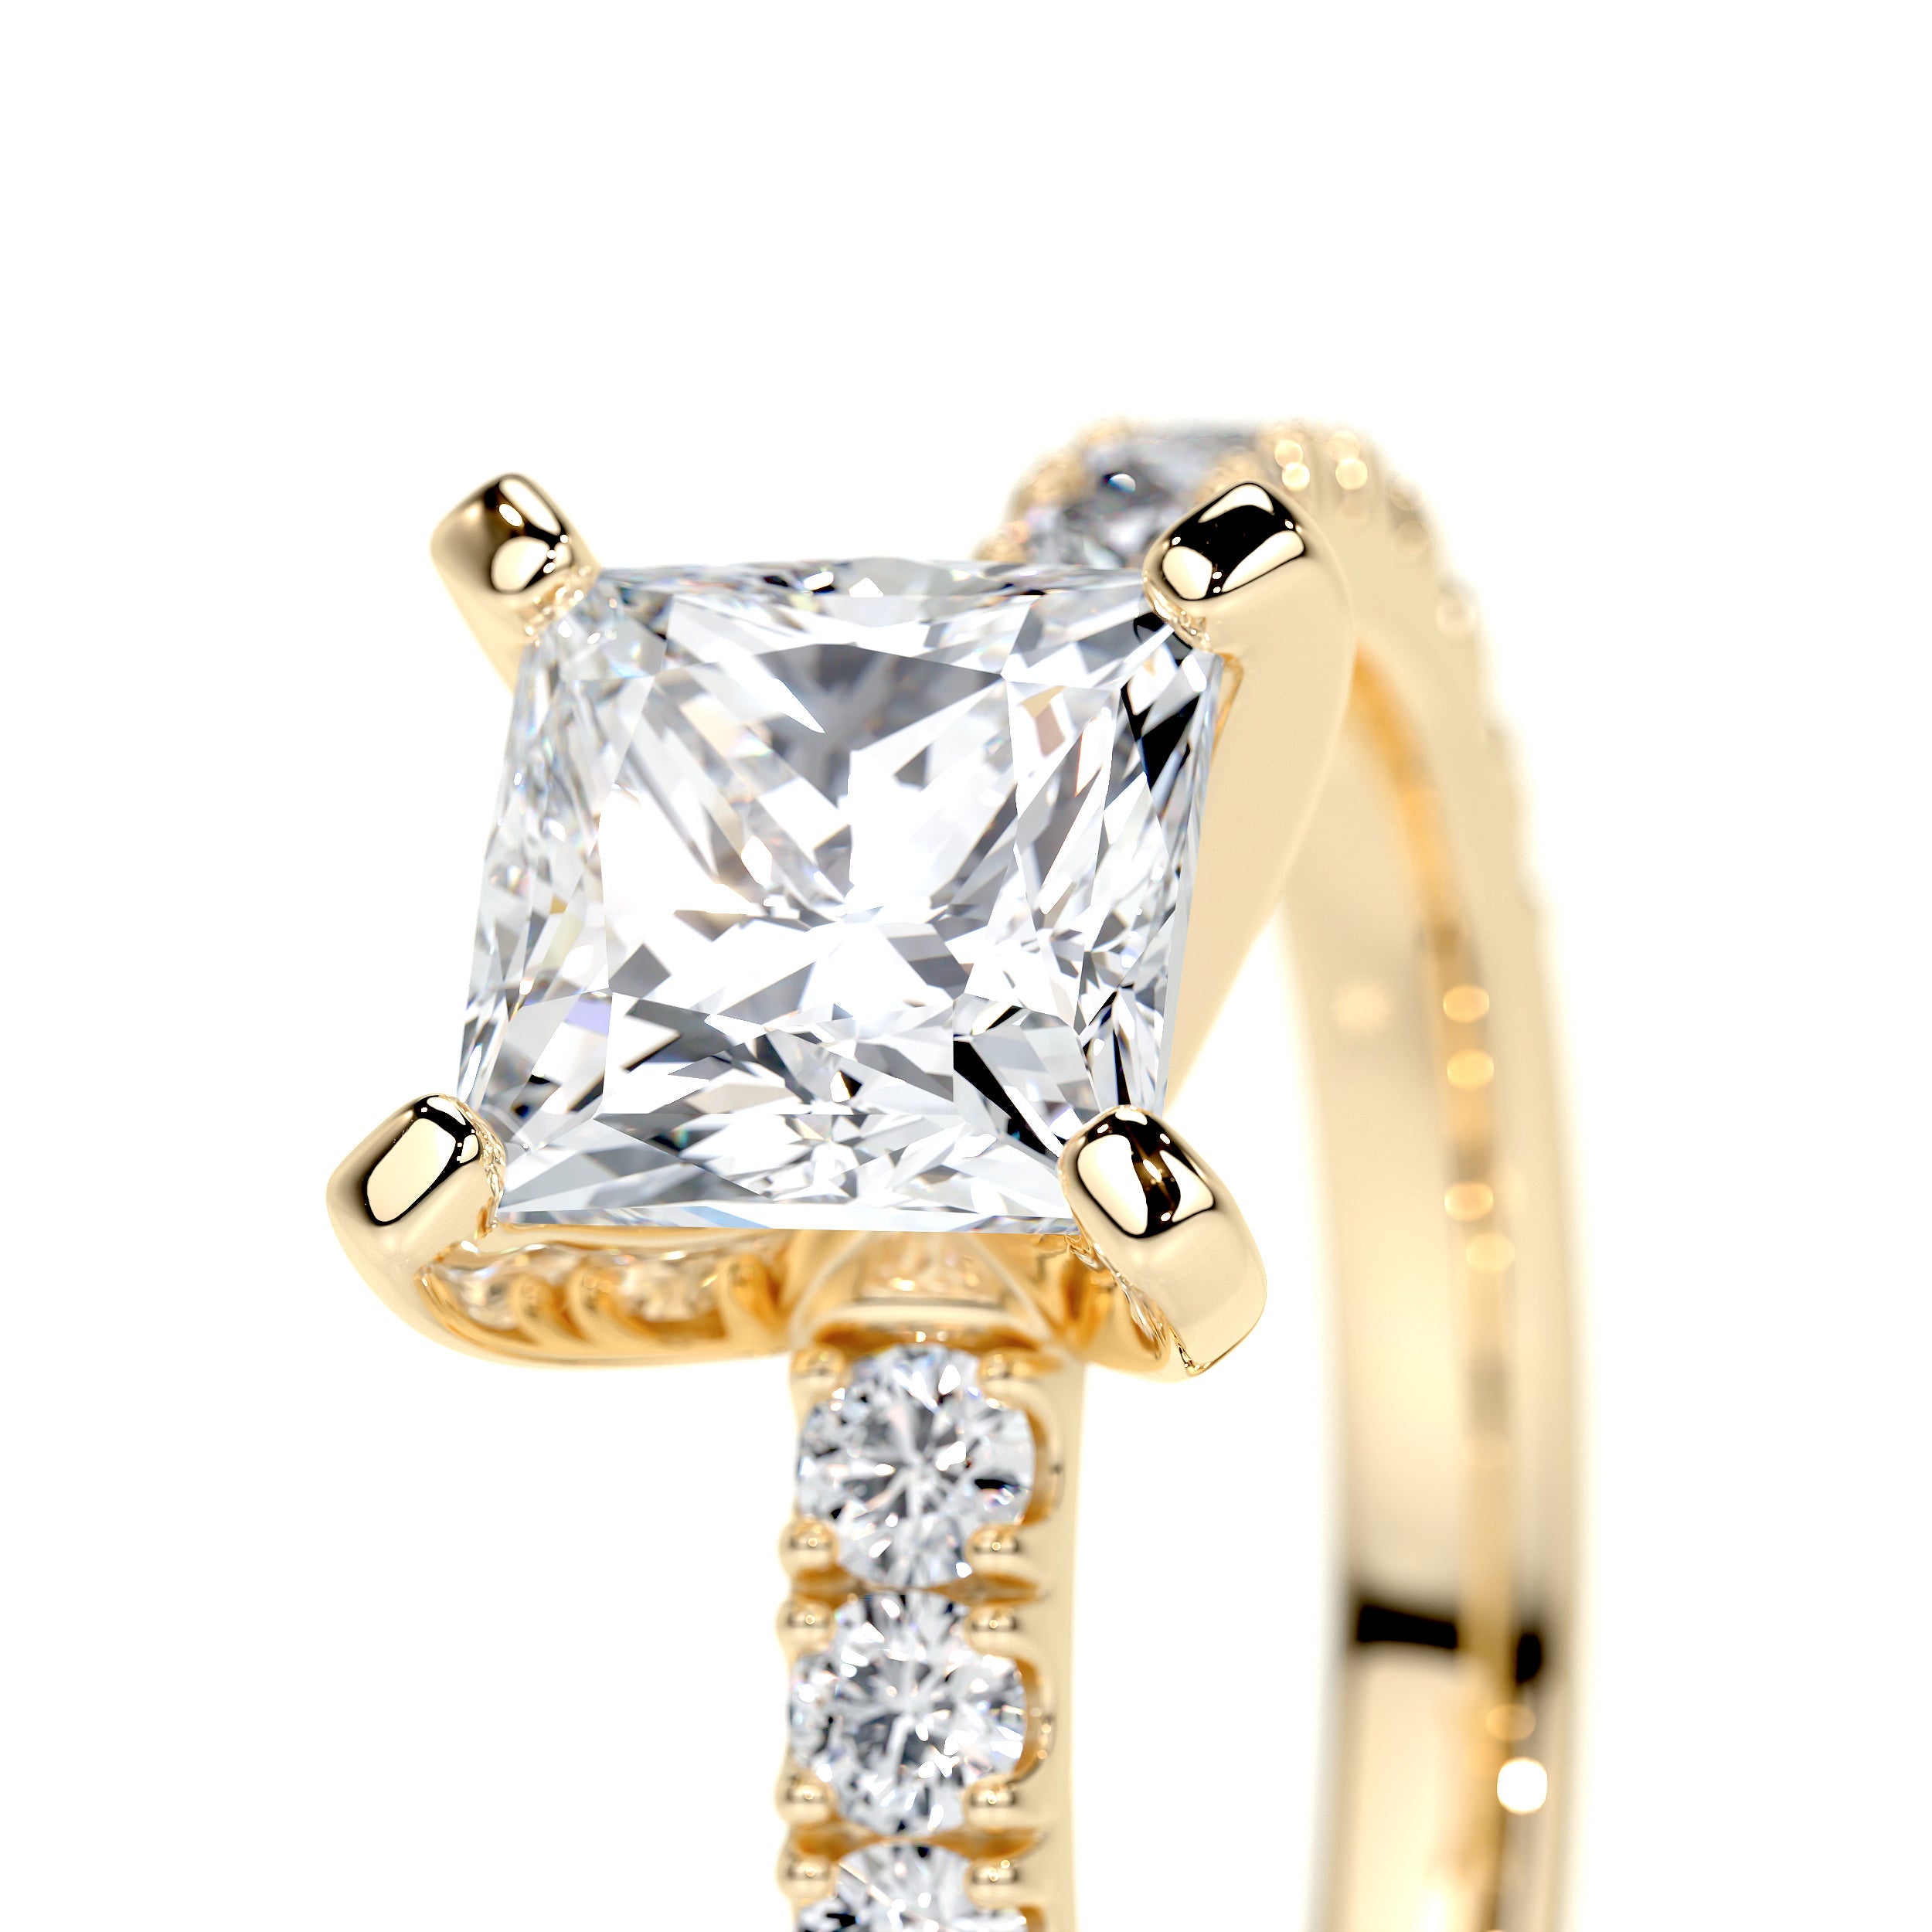 Blair Lab Grown Diamond Ring   (1.5 Carat) -18K Yellow Gold